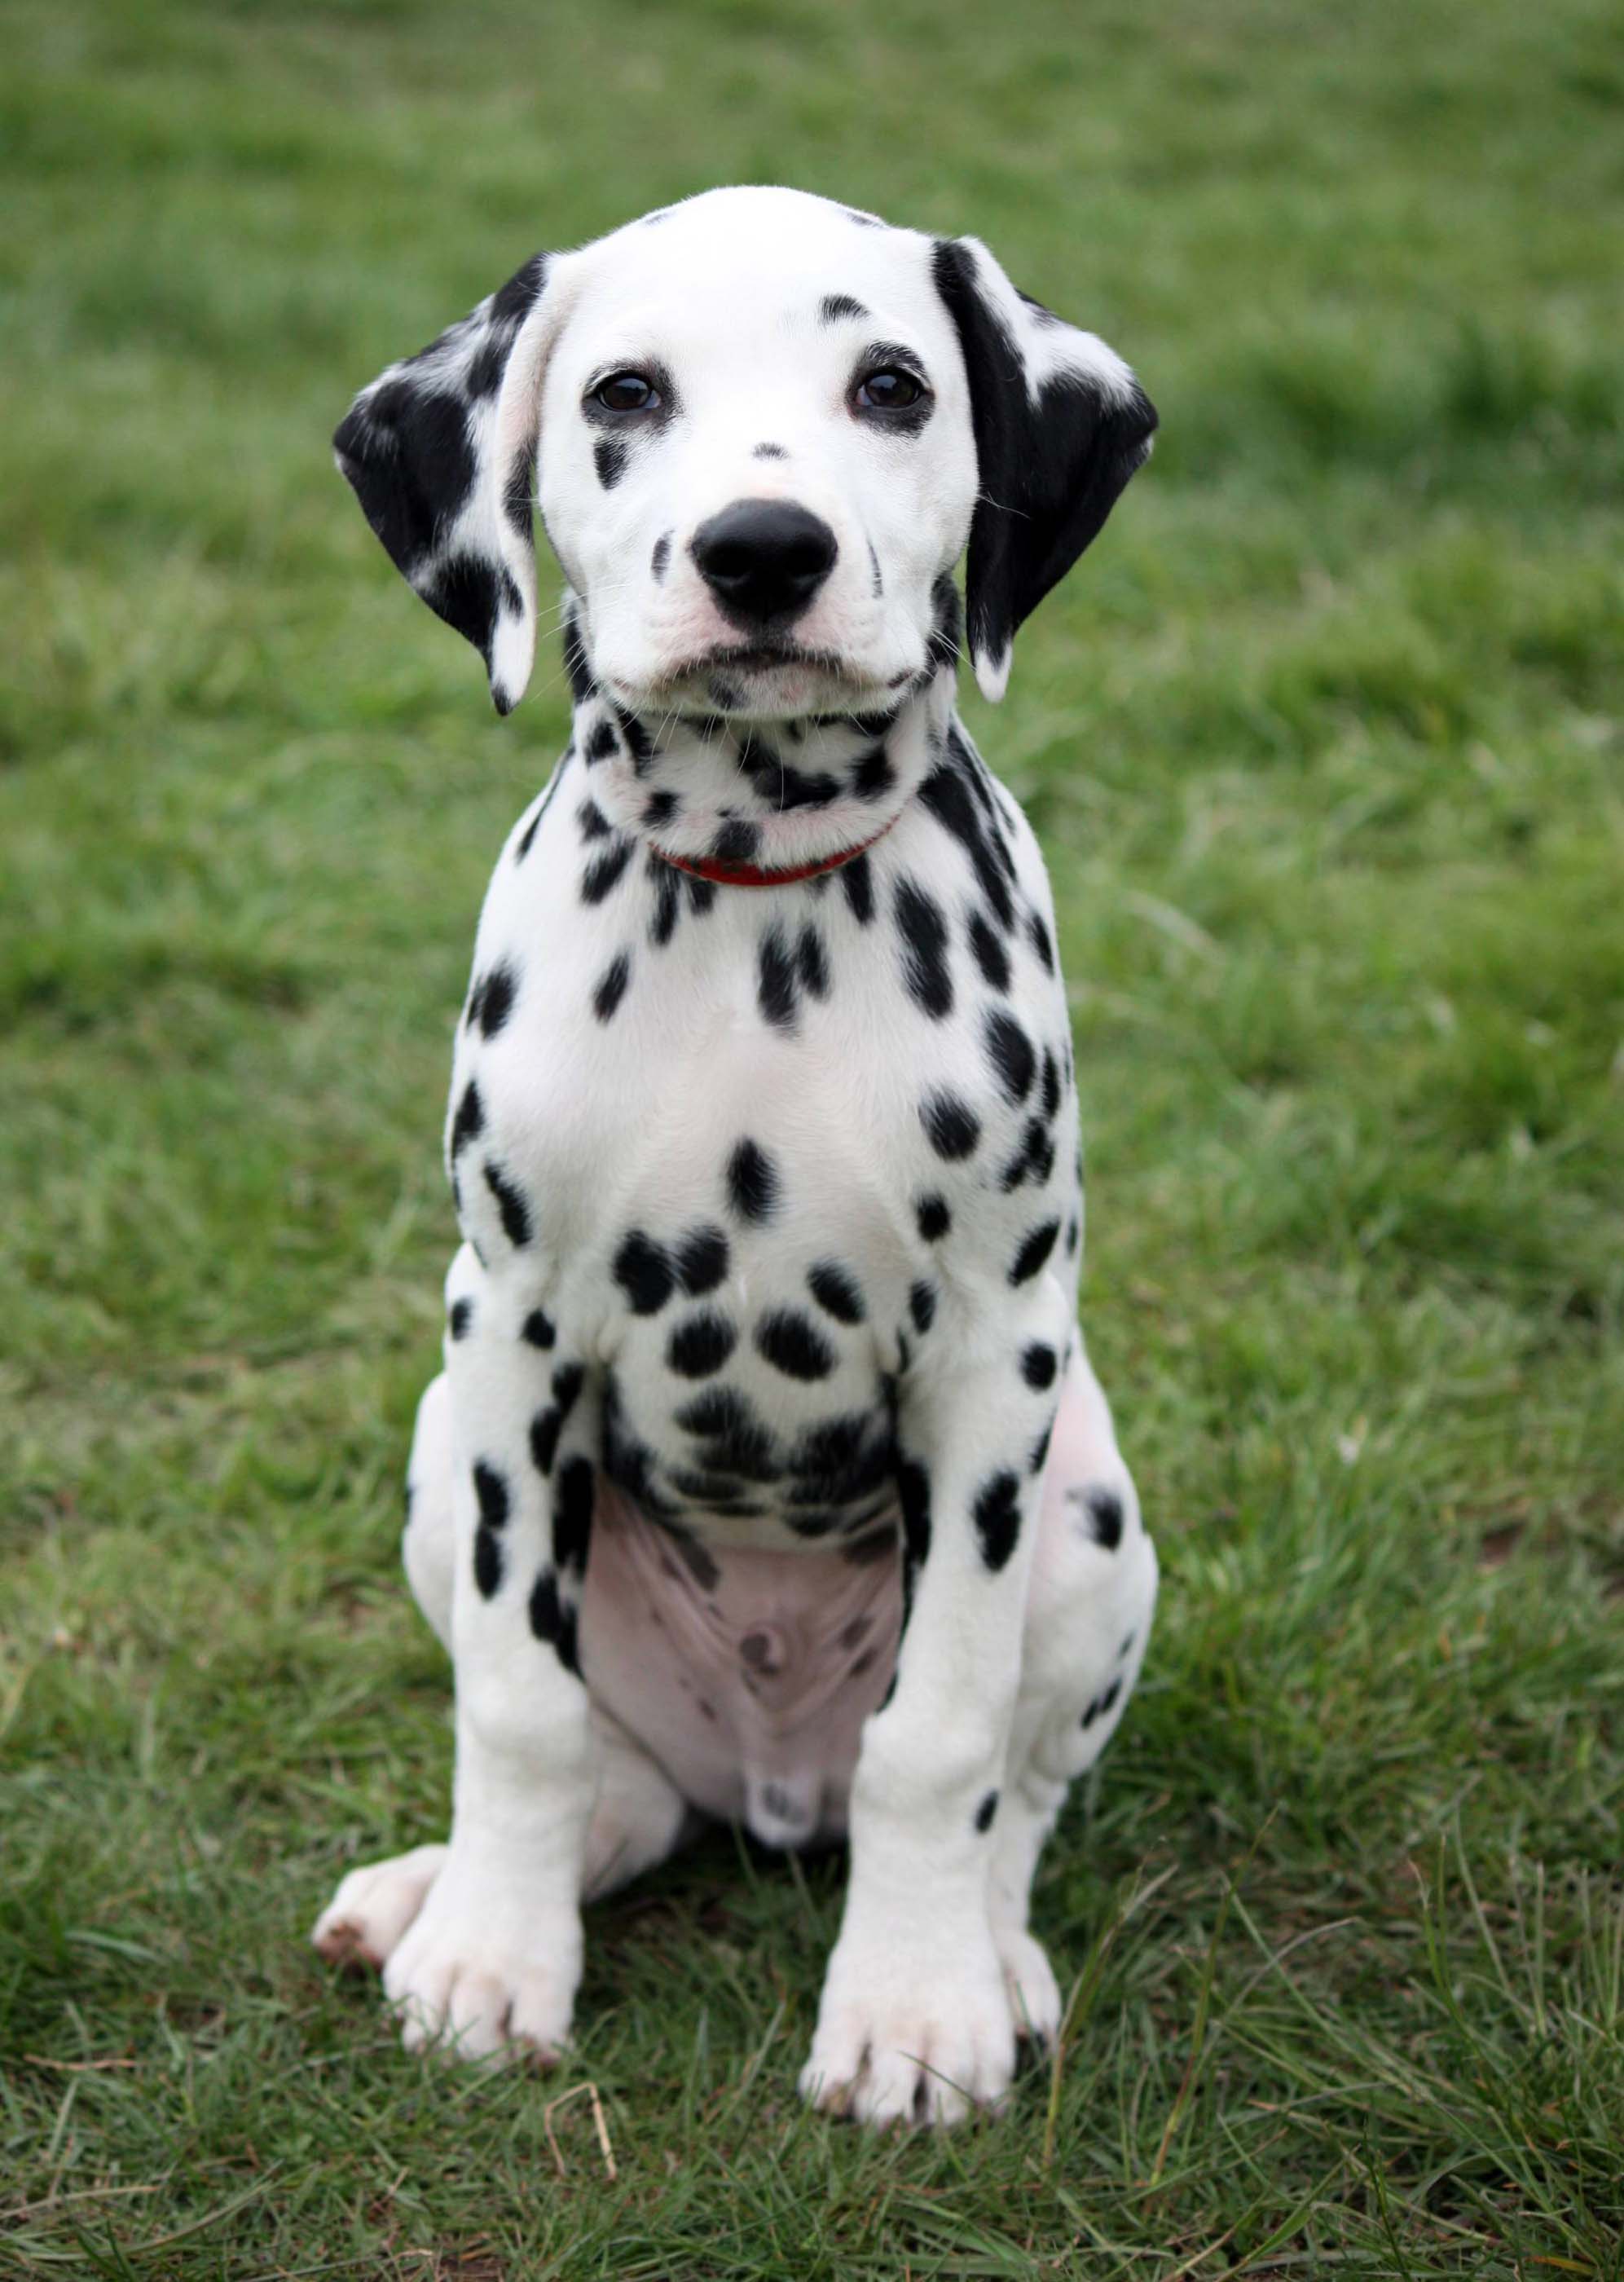 Dalmatian - All Big Dog Breeds